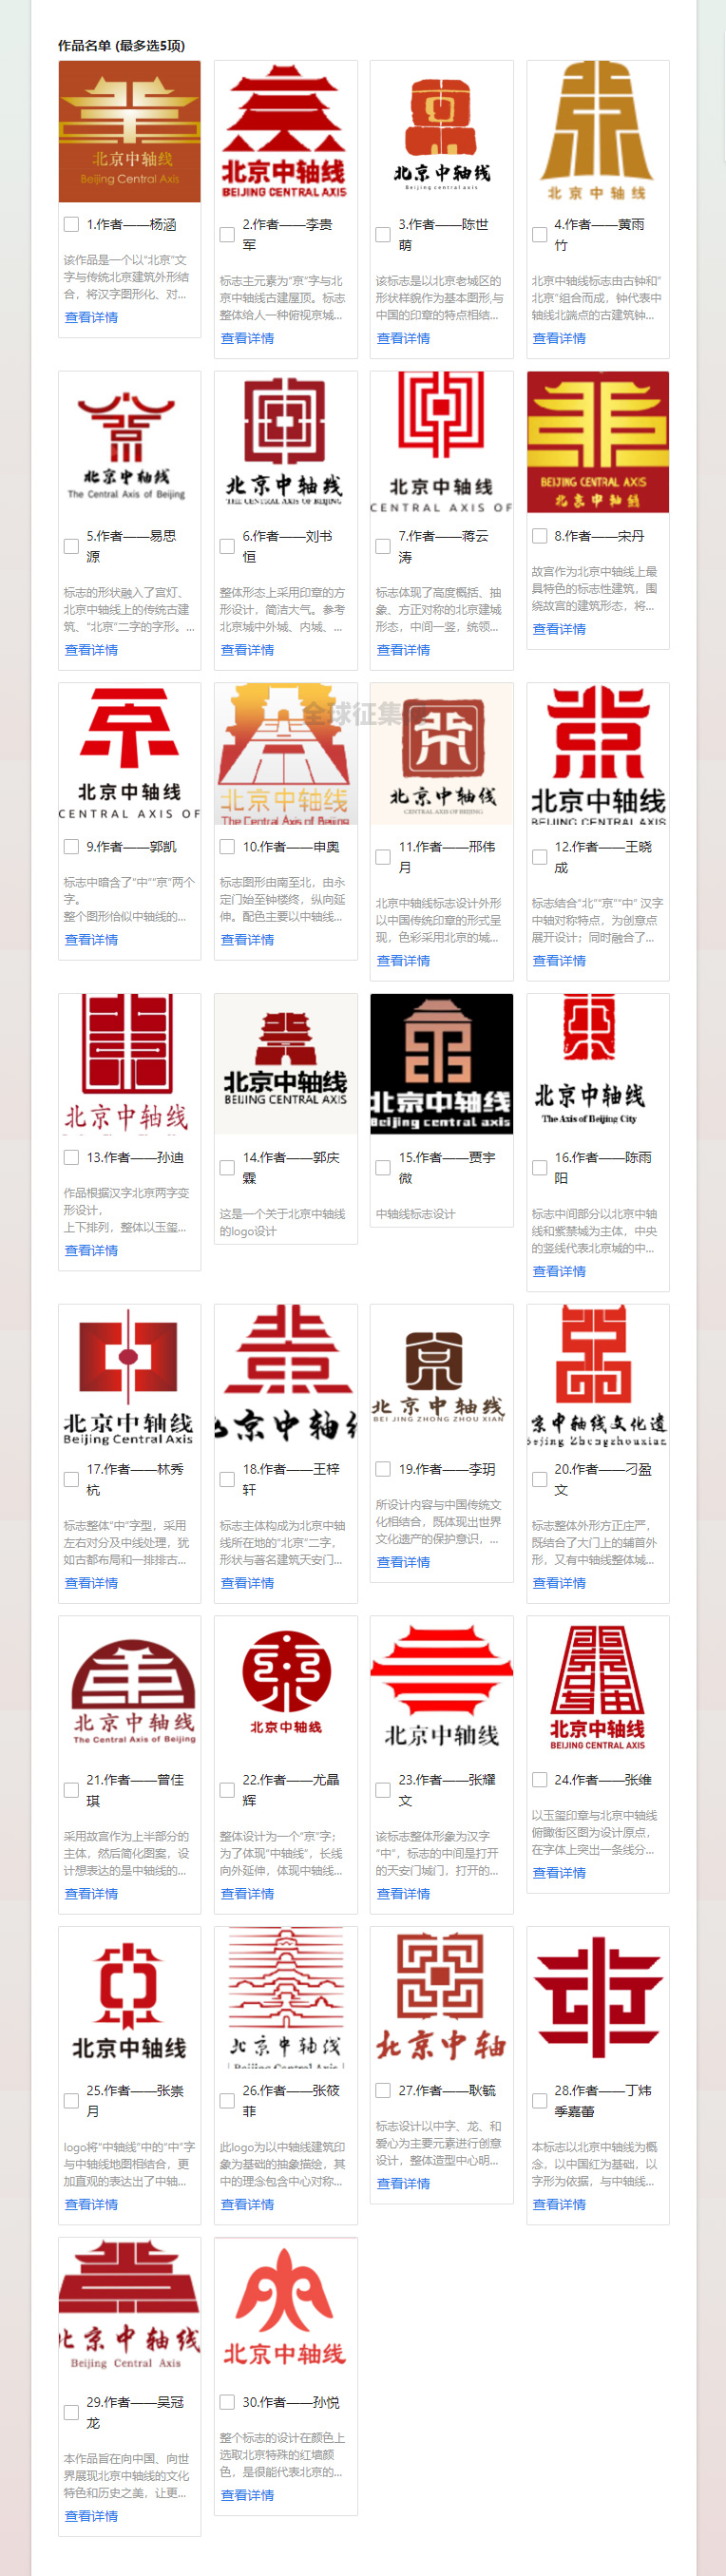 北京文博丨中轴线创意大赛网络投票正式启动啦